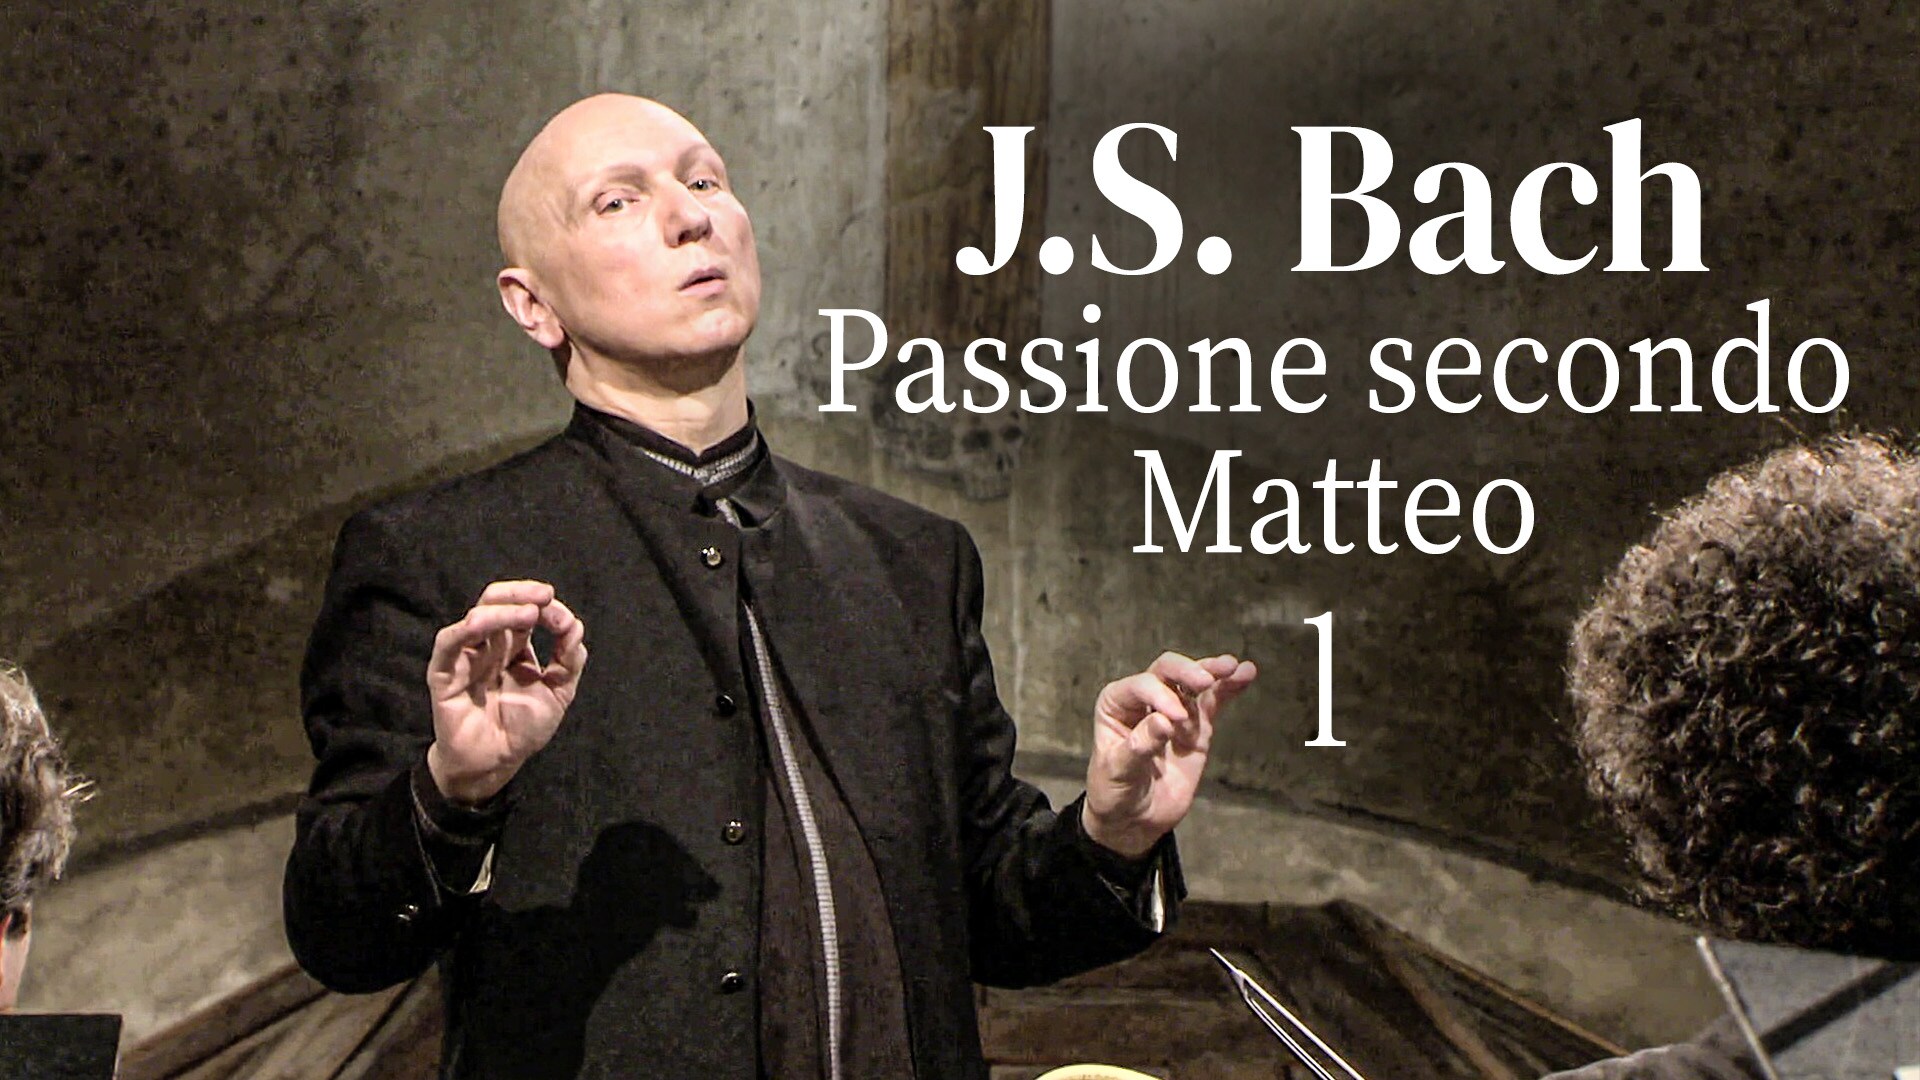 J.S. Bach: Passione secondo Matteo - Prima parte